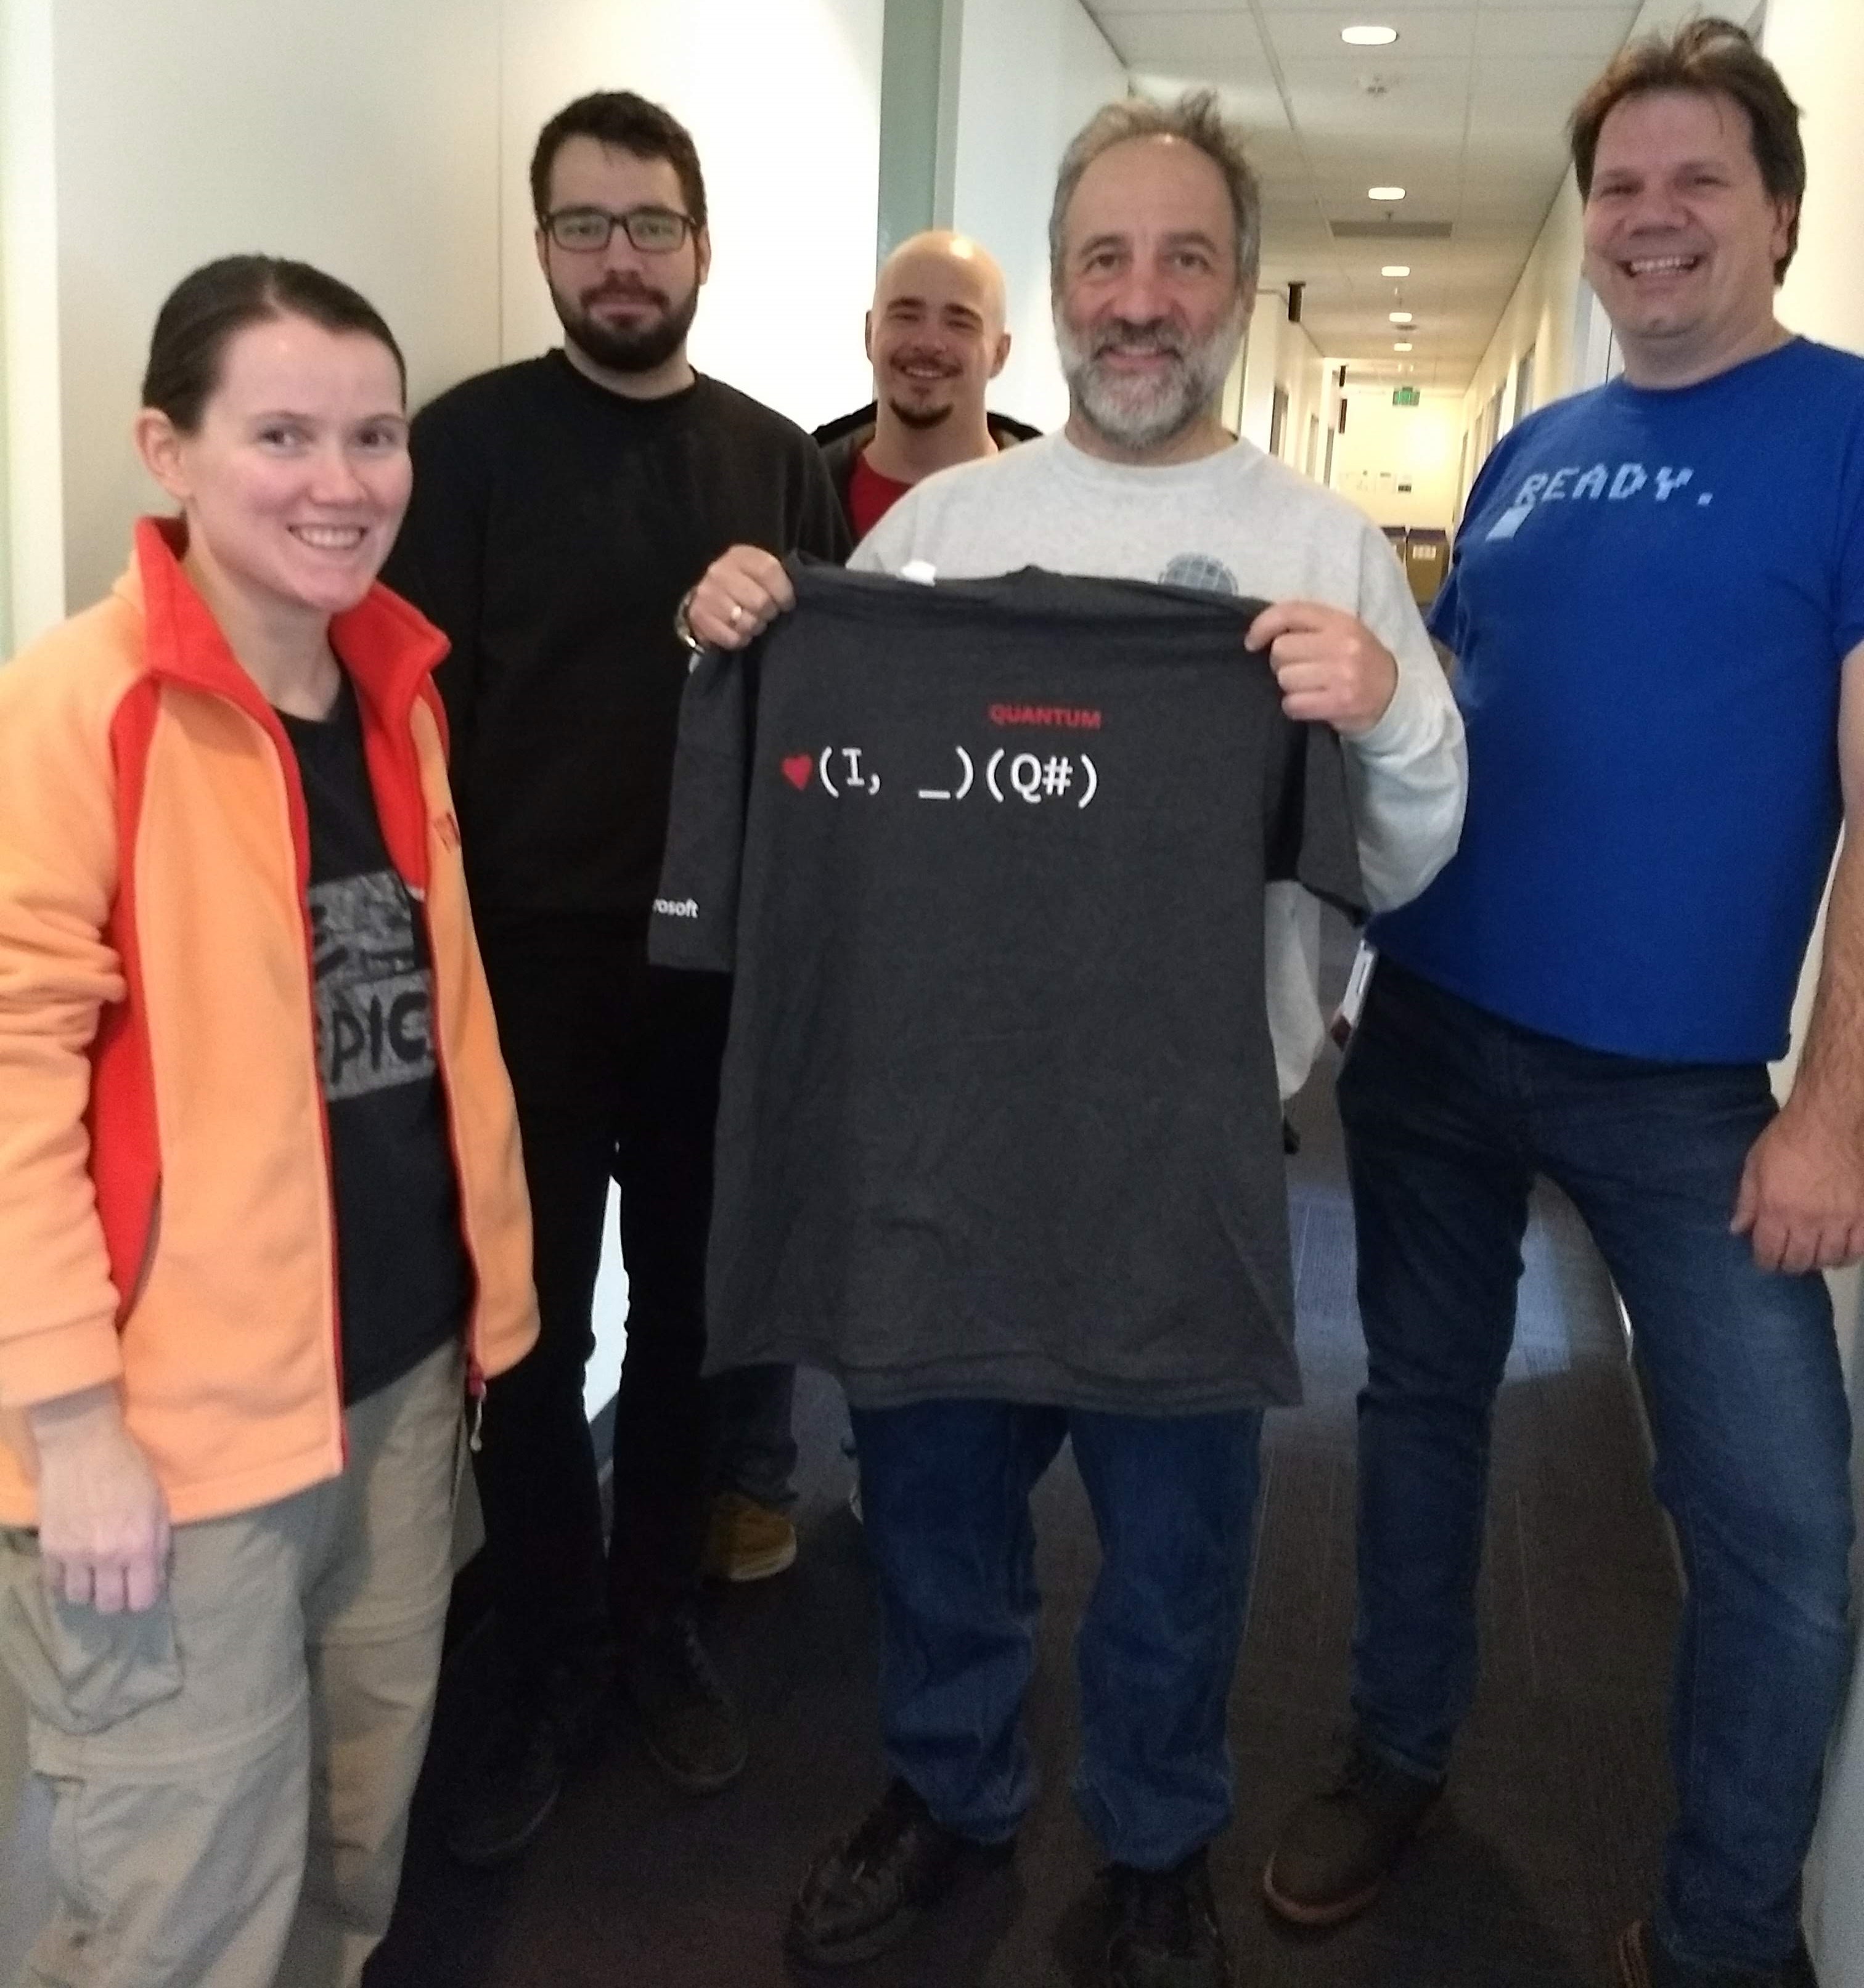 The awesome Hackathon team for Simon's kata